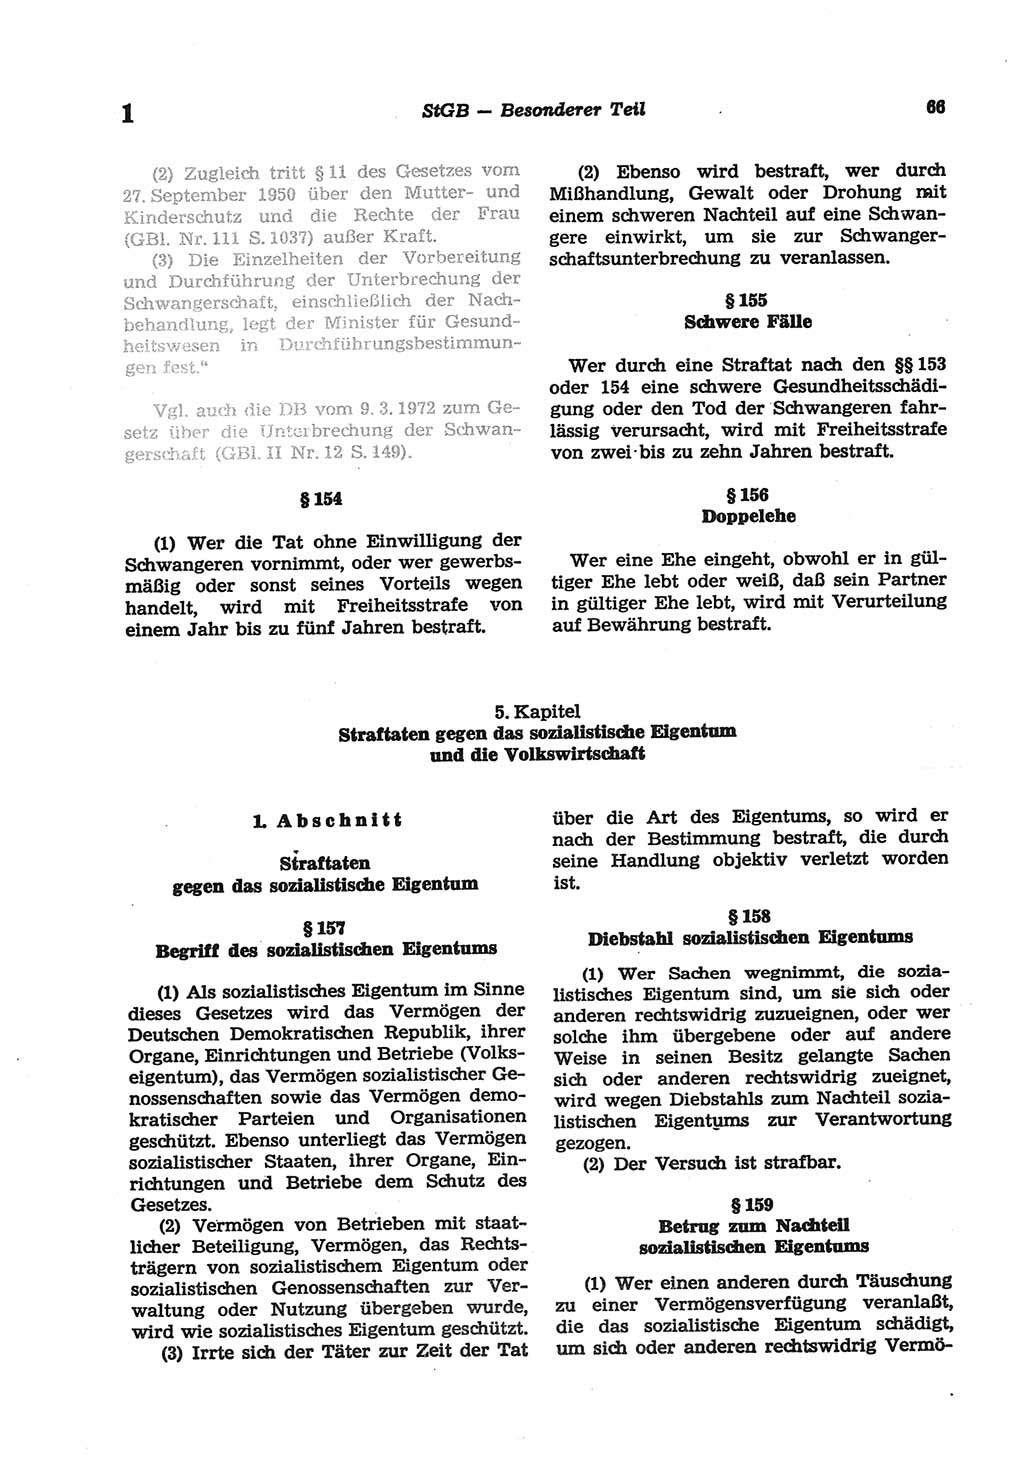 Strafgesetzbuch (StGB) der Deutschen Demokratischen Republik (DDR) und angrenzende Gesetze und Bestimmungen 1977, Seite 66 (StGB DDR Ges. Best. 1977, S. 66)